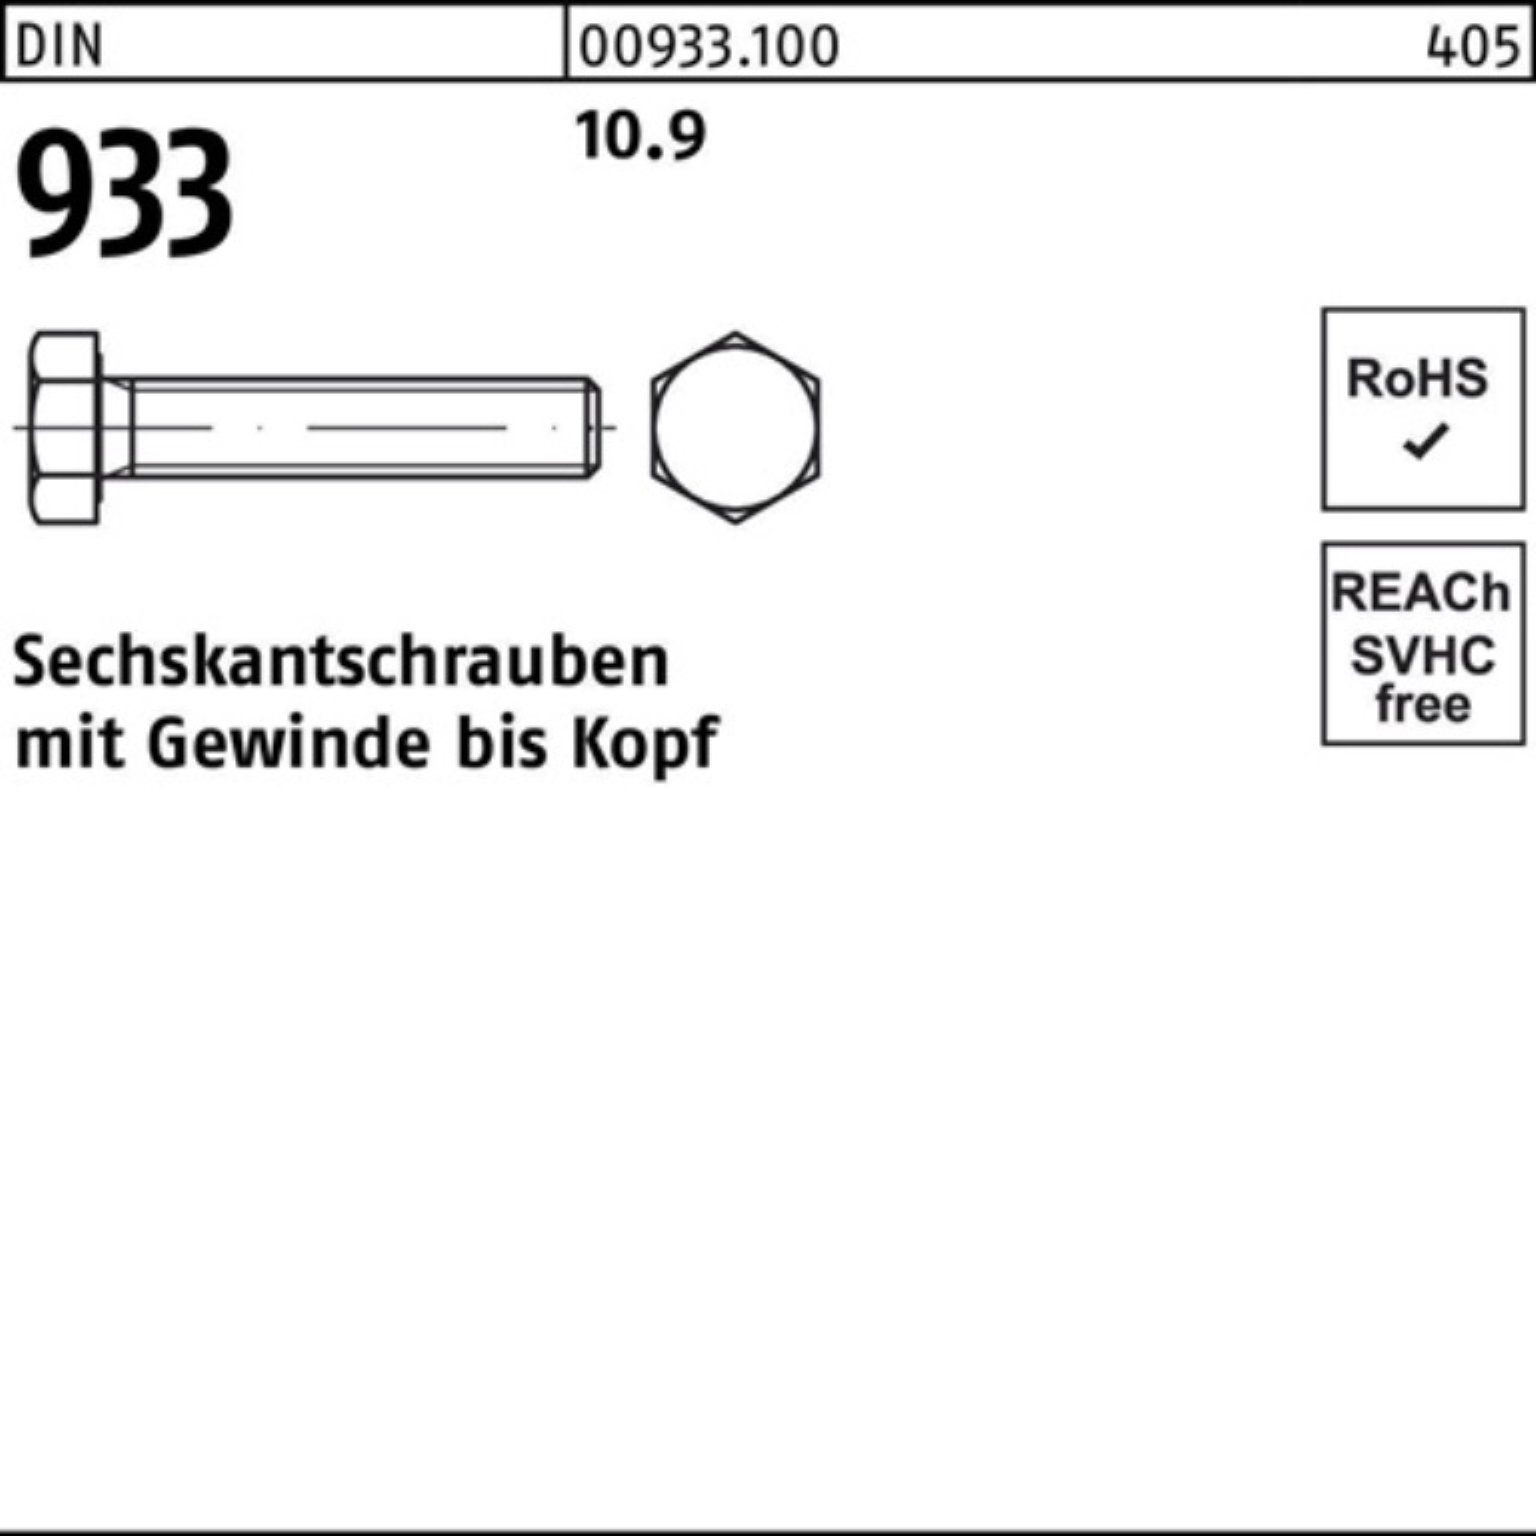 Reyher Sechskantschraube 200er M8x VG DIN Stück DIN 933 Pack 10.9 933 Sechskantschraube 45 200